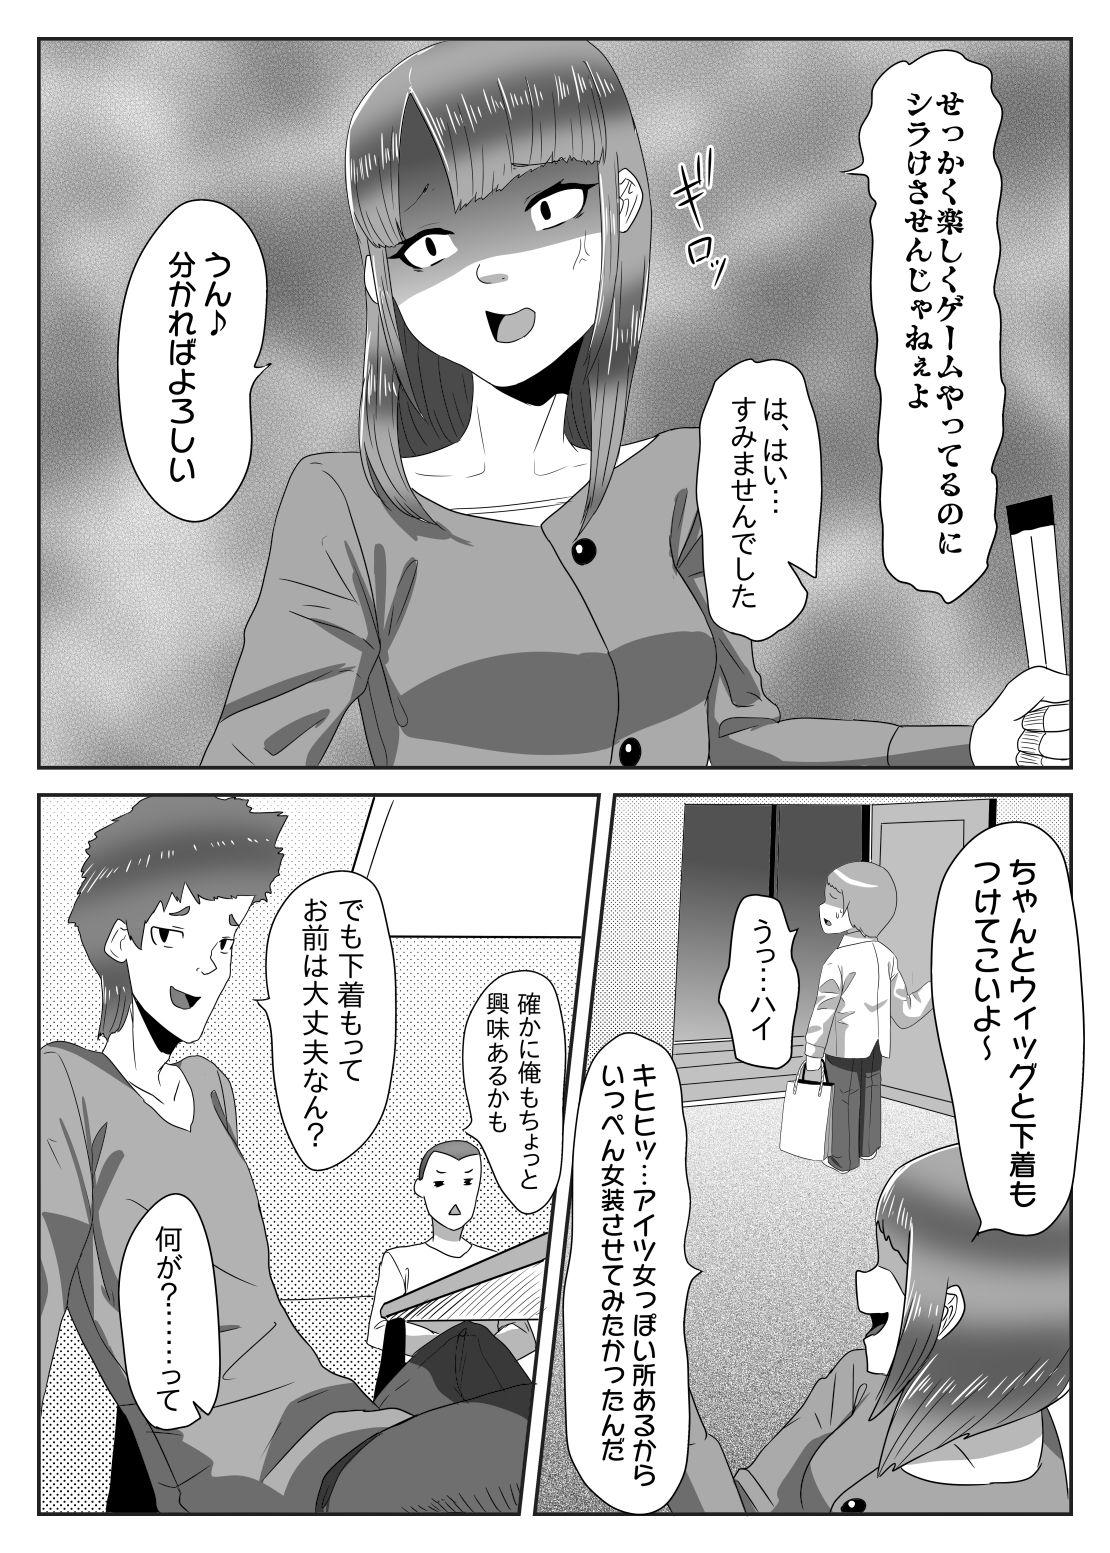 Dyke Batsu gēmu de josō sanpo sa se rarete itara ikemen futanari musume ni tasuke raremashita - Original Sem Camisinha - Page 5